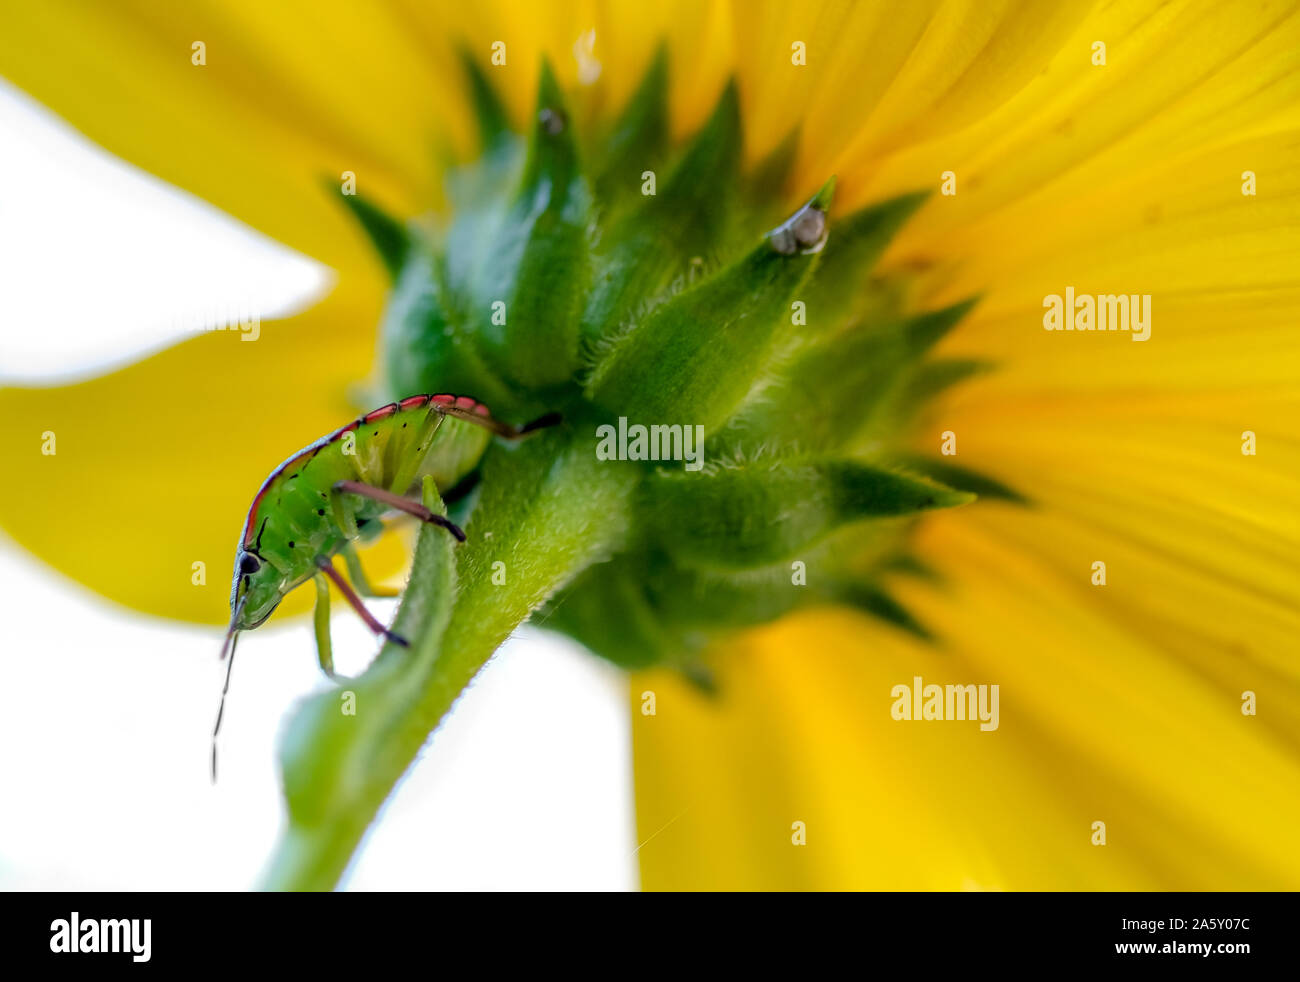 Grüne Bed Bug Insekt auf eine gelbe Blume Hintergrund, hemiptera, Natur Tierwelt Stockfoto